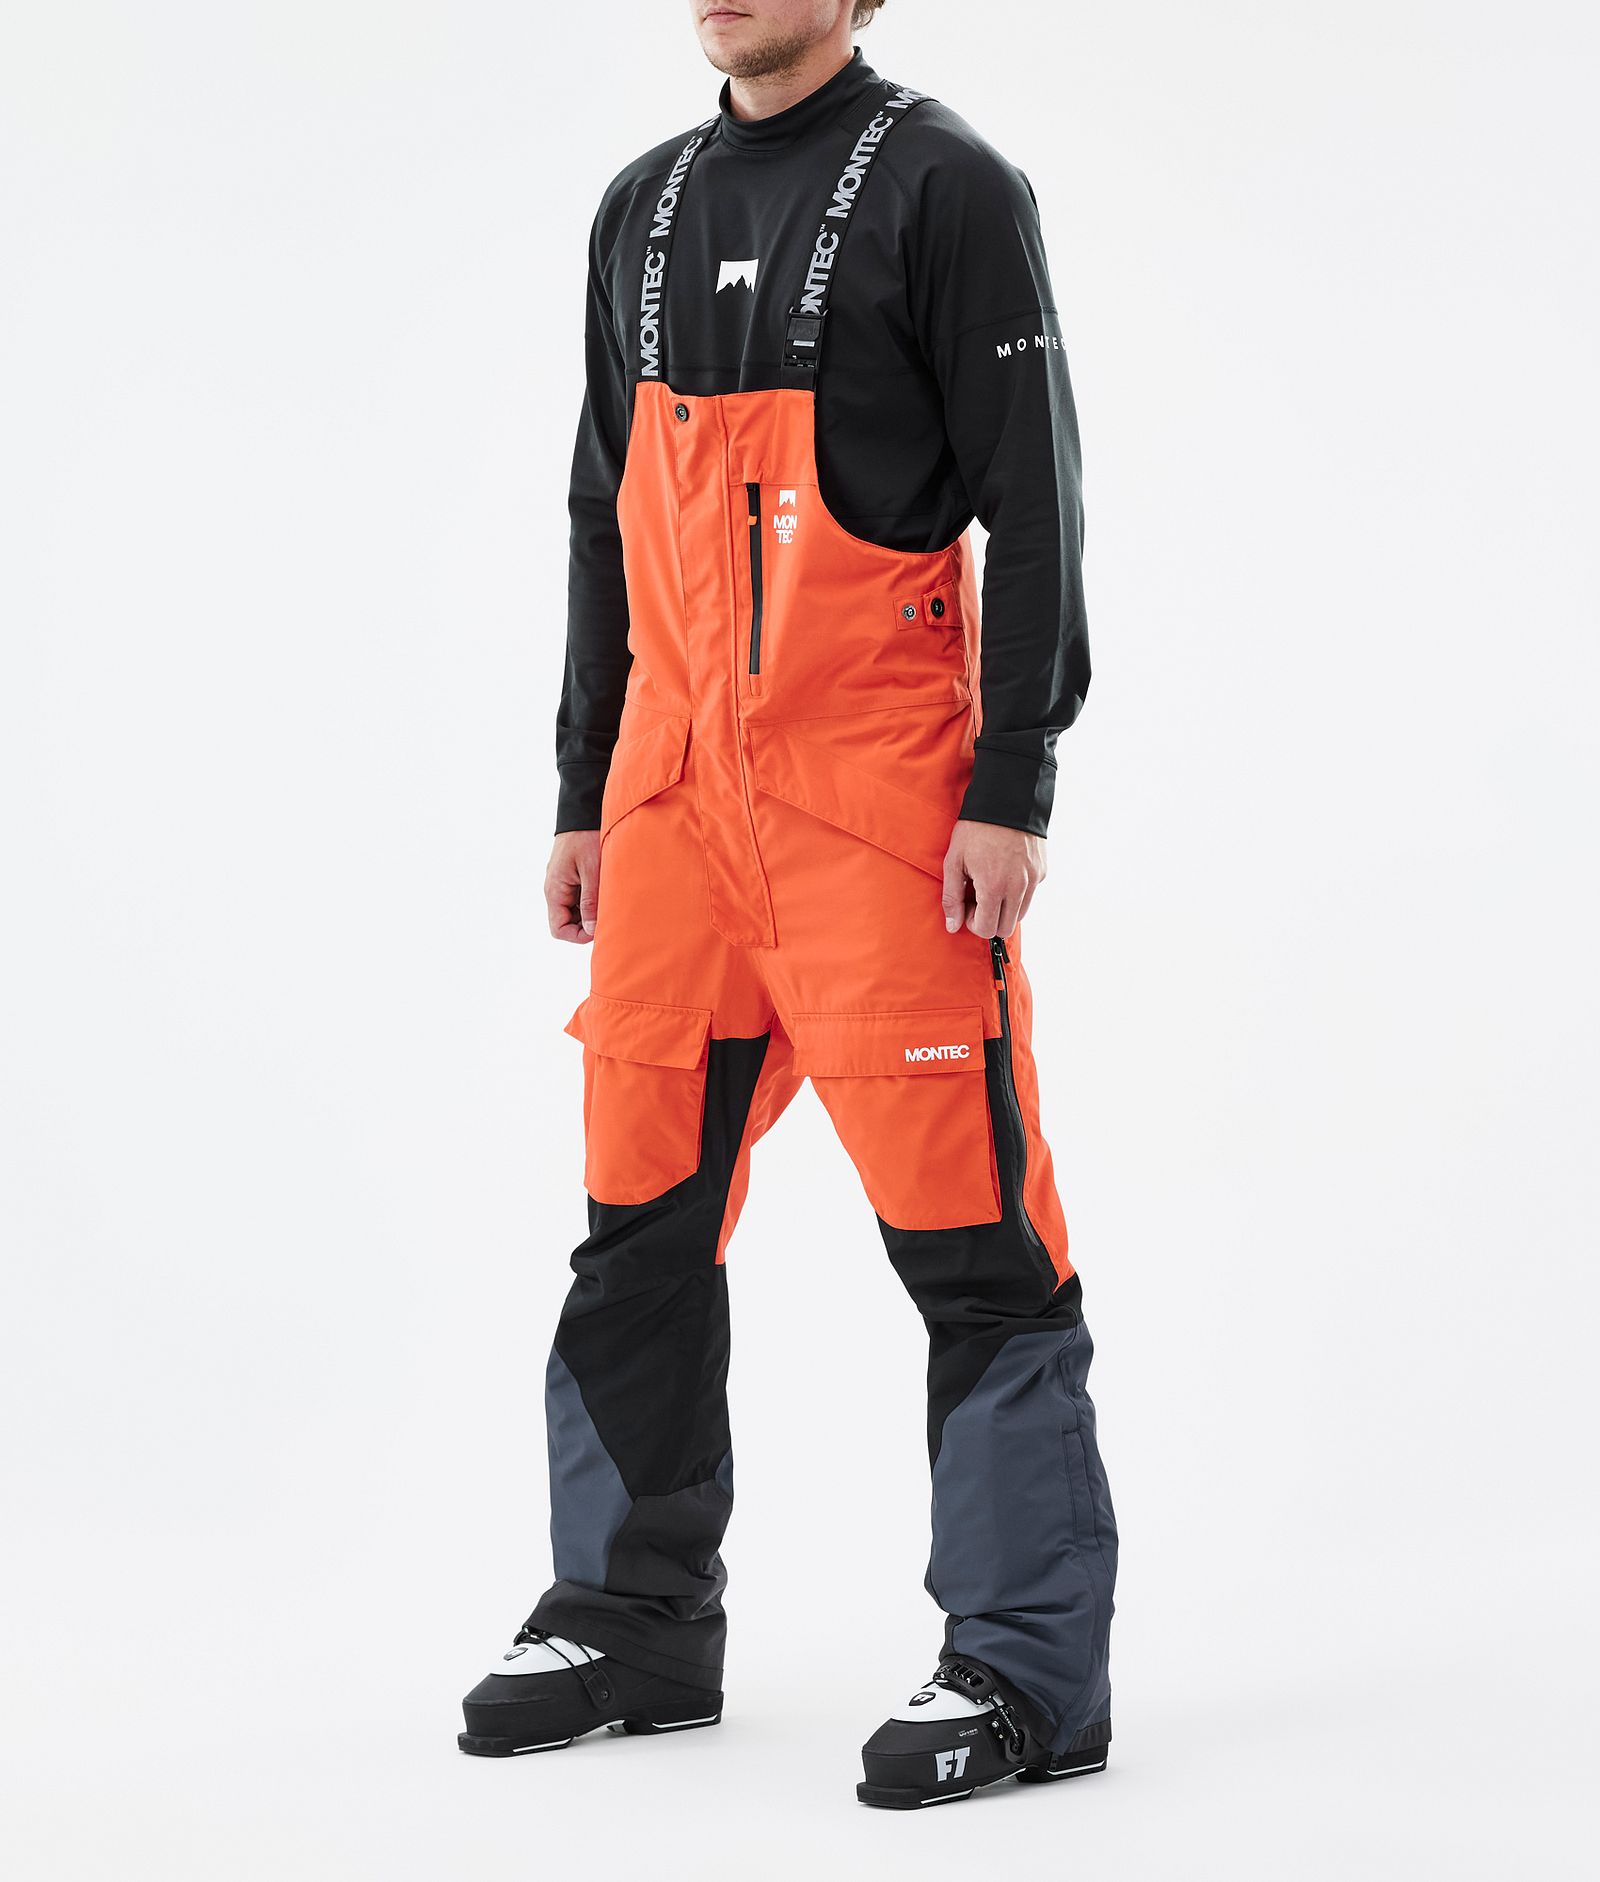 Montec Fawk Ski Pants Men Orange/Black/Metal Blue, Image 1 of 6